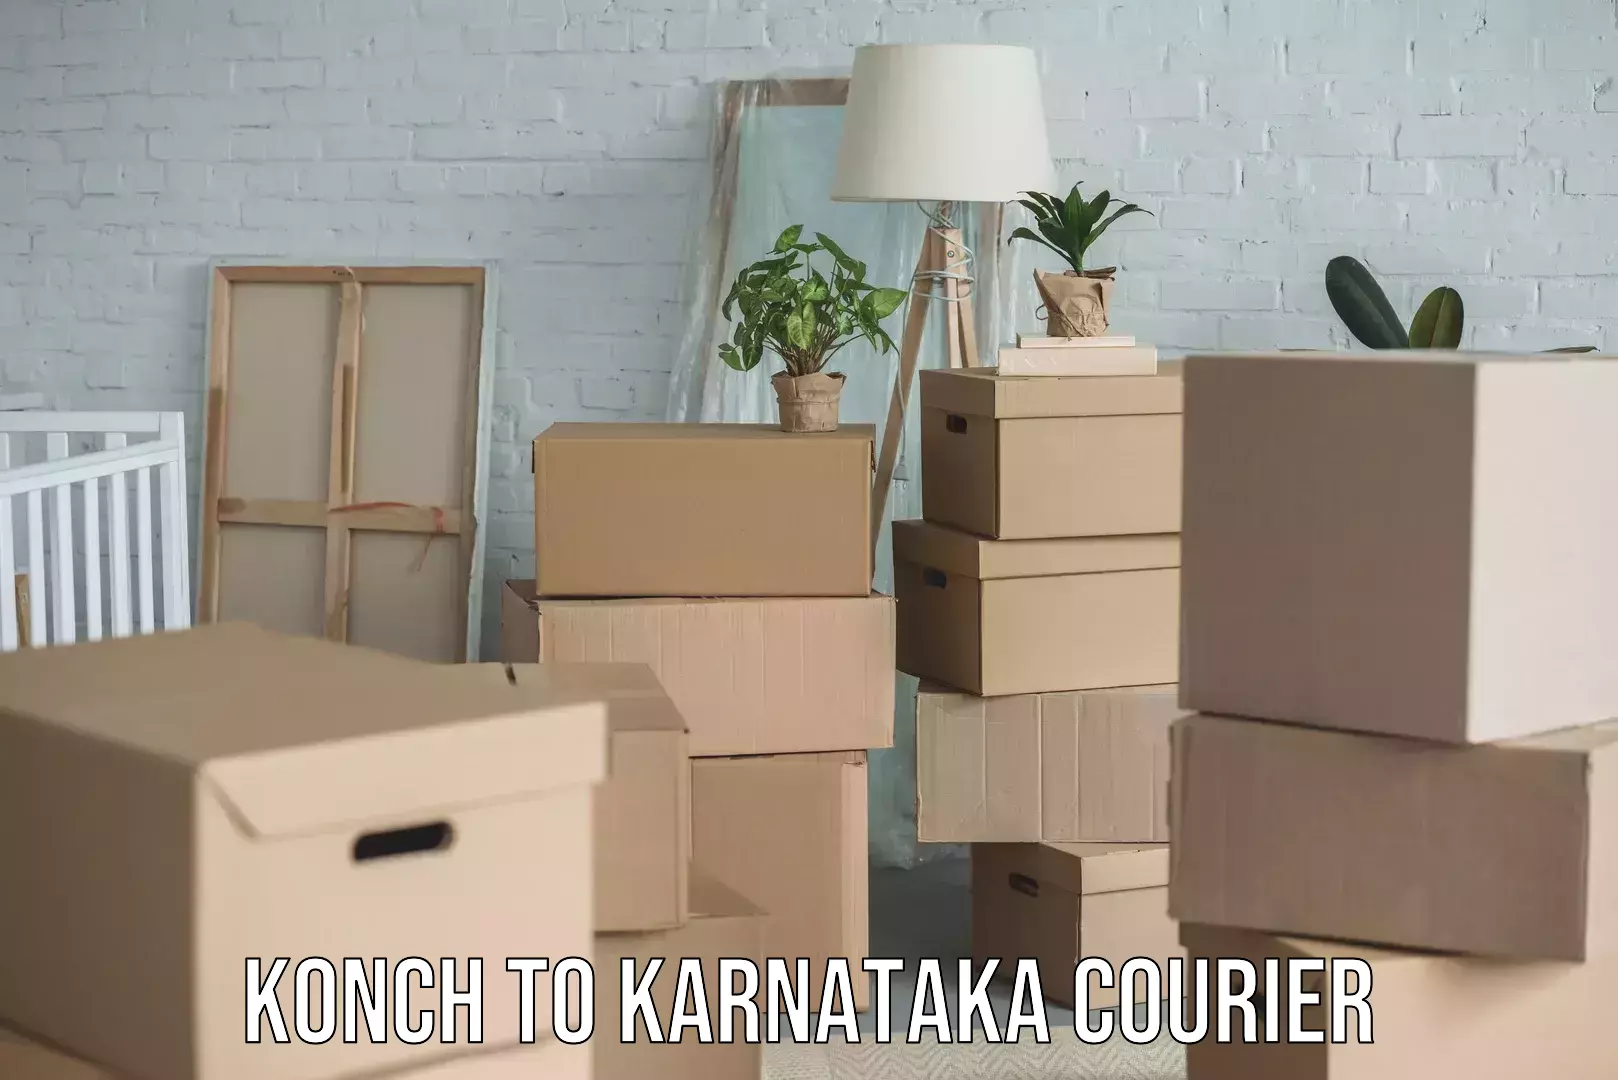 Professional furniture moving in Konch to Karnataka